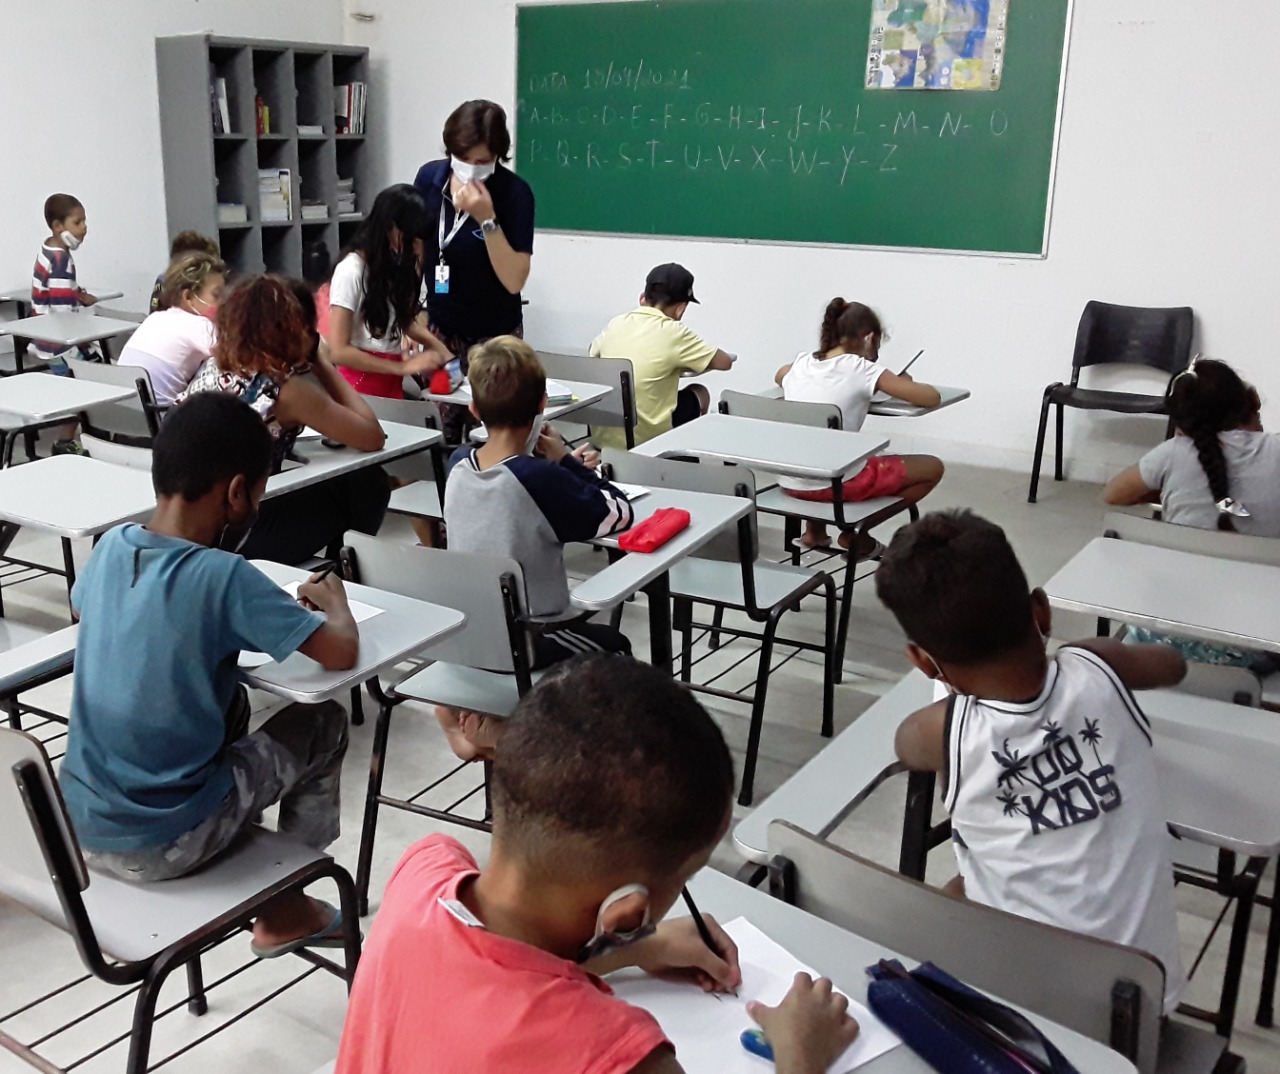 Em uma sala de aula, crianças com máscaras de proteção facial estão sentadas escrevendo, há uma professora na sala explicando o conteúdo. Na lousa está escrito o alfabeto. 